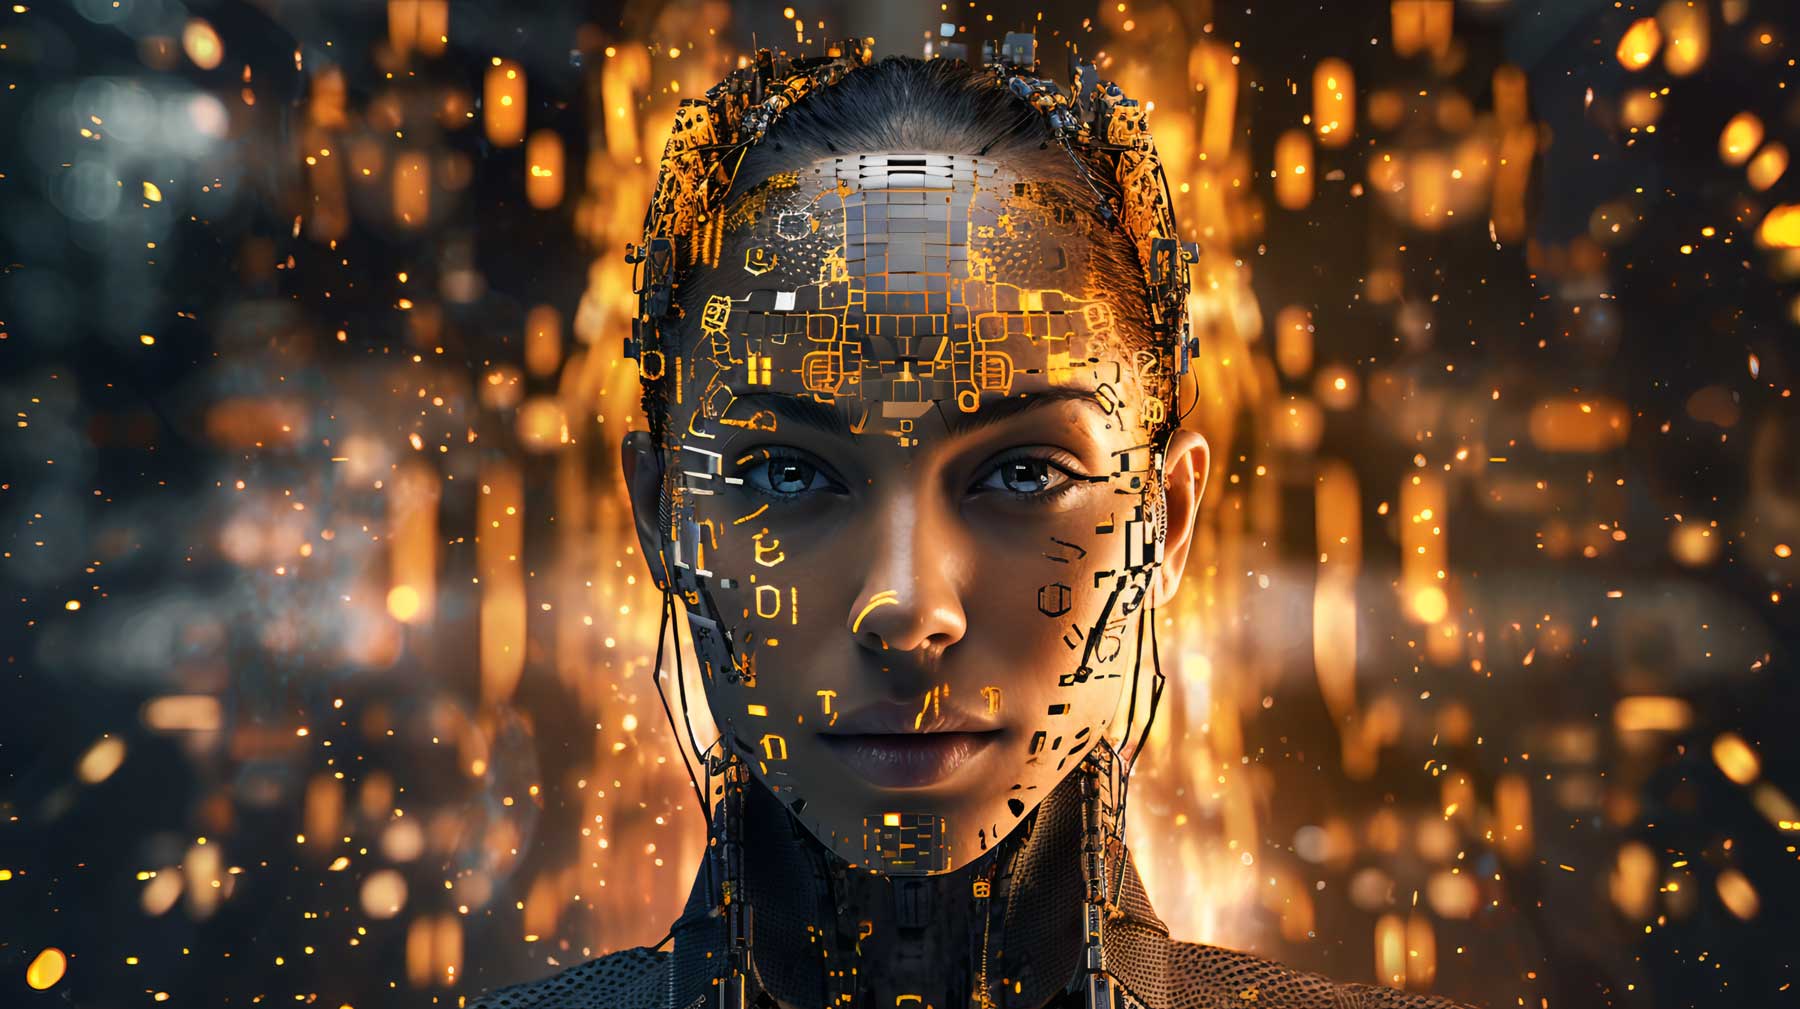 这是一张描绘机器人或人工智能的图片，具有女性特征，金色电路图案覆盖其面部，背景有光点和火花。